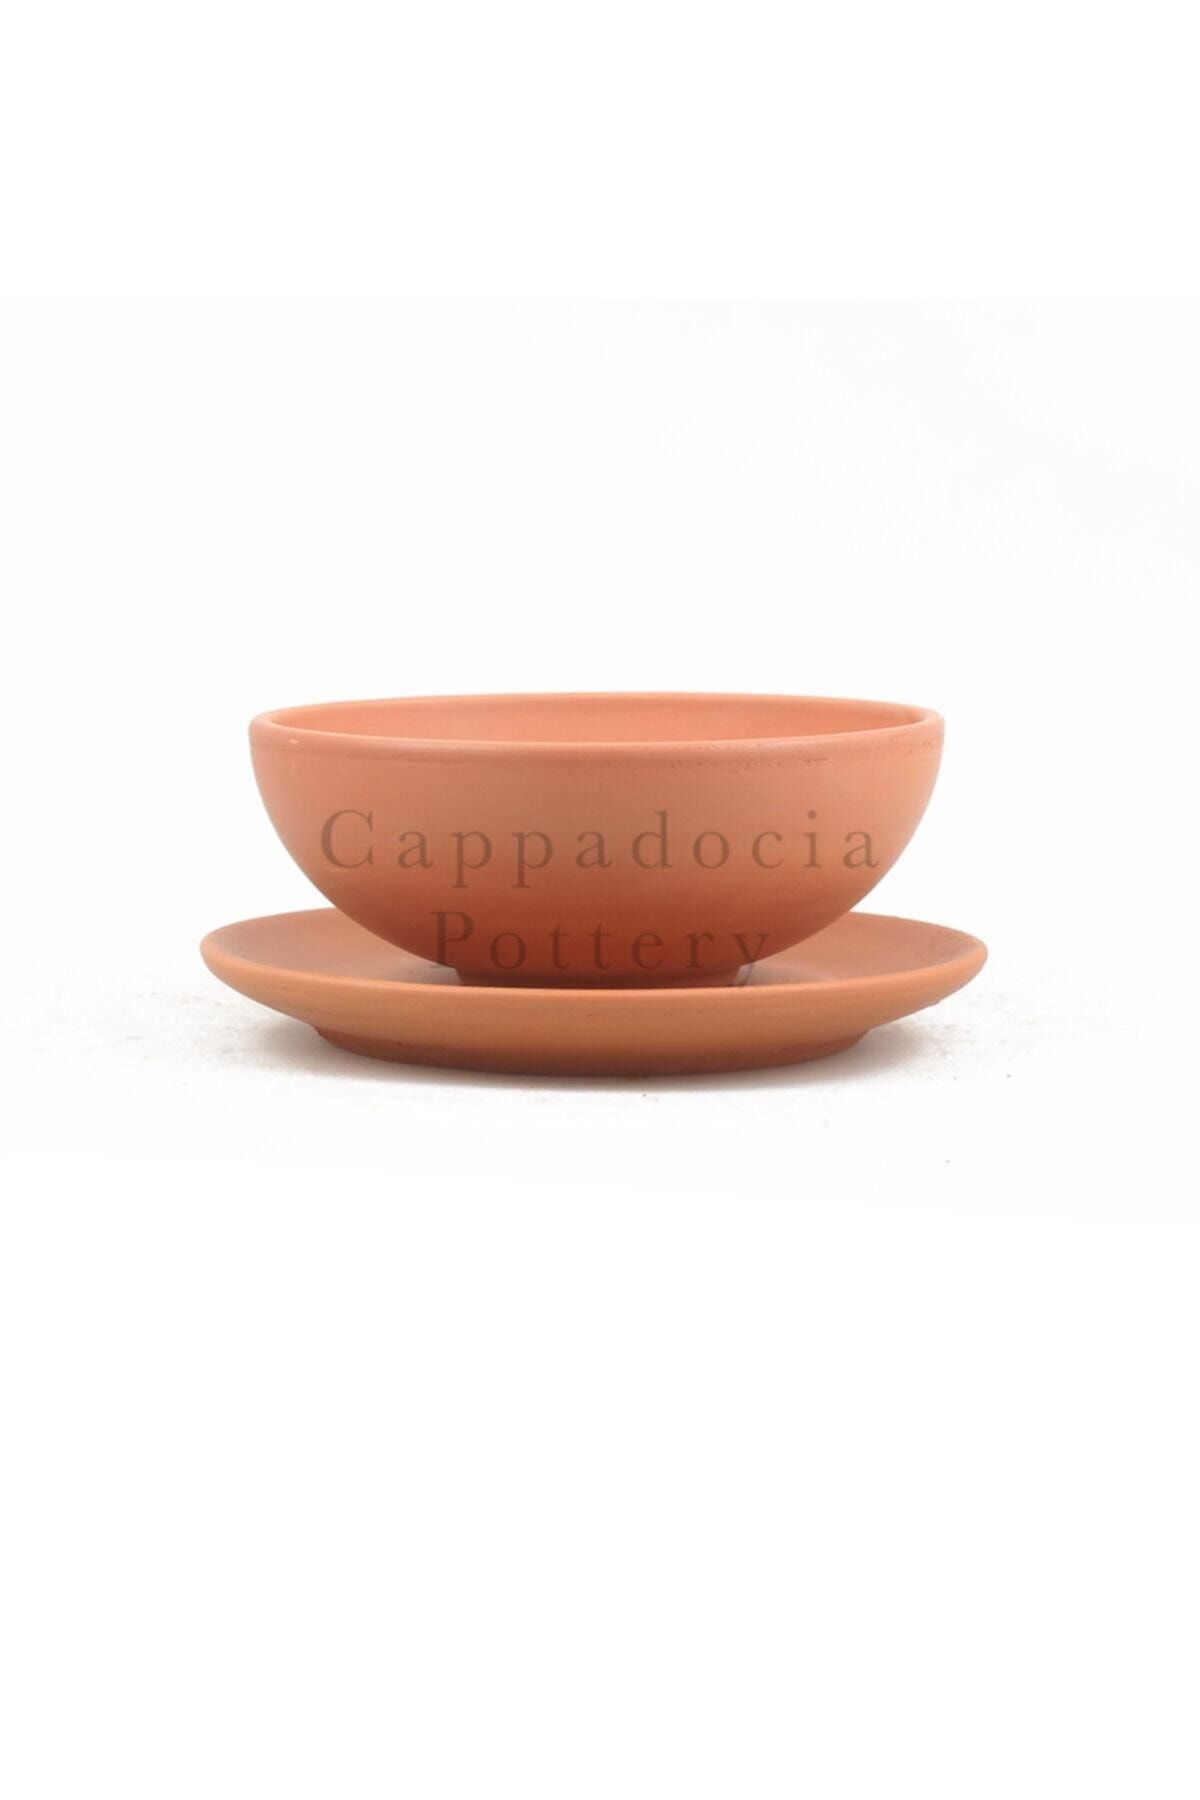 Cappadocia Pottery 15cm Tabaklı Kase Tipi Doğal Terleyen Çömlek Toprak Yayvan Saksı No.170